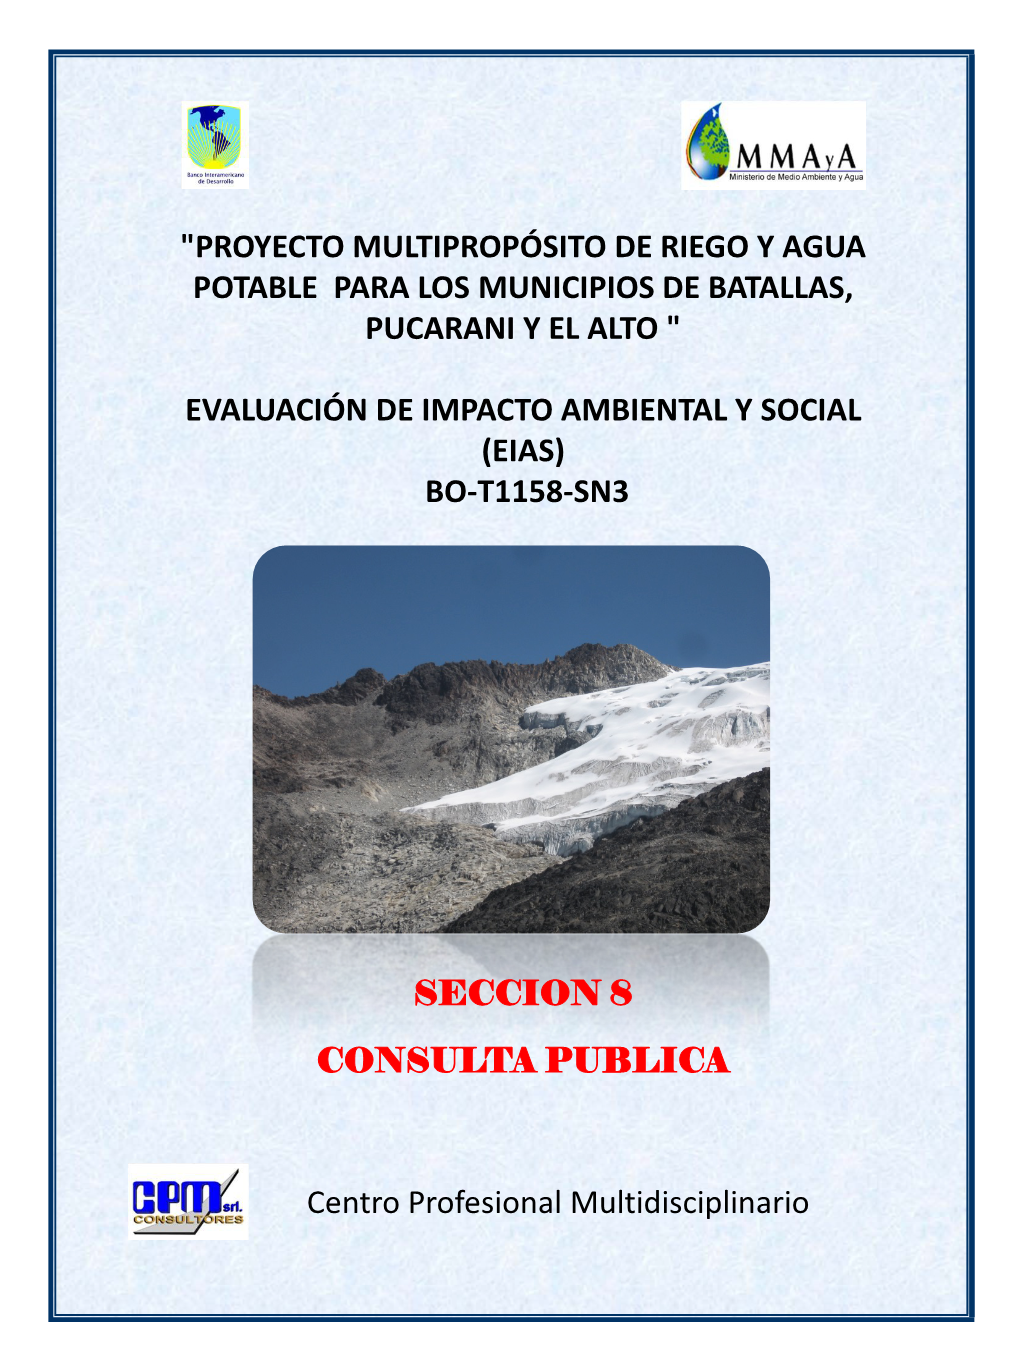 "Proyecto Multipropósito De Riego Y Agua Potable Para Los Municipios De Batallas, Pucarani Y El Alto "